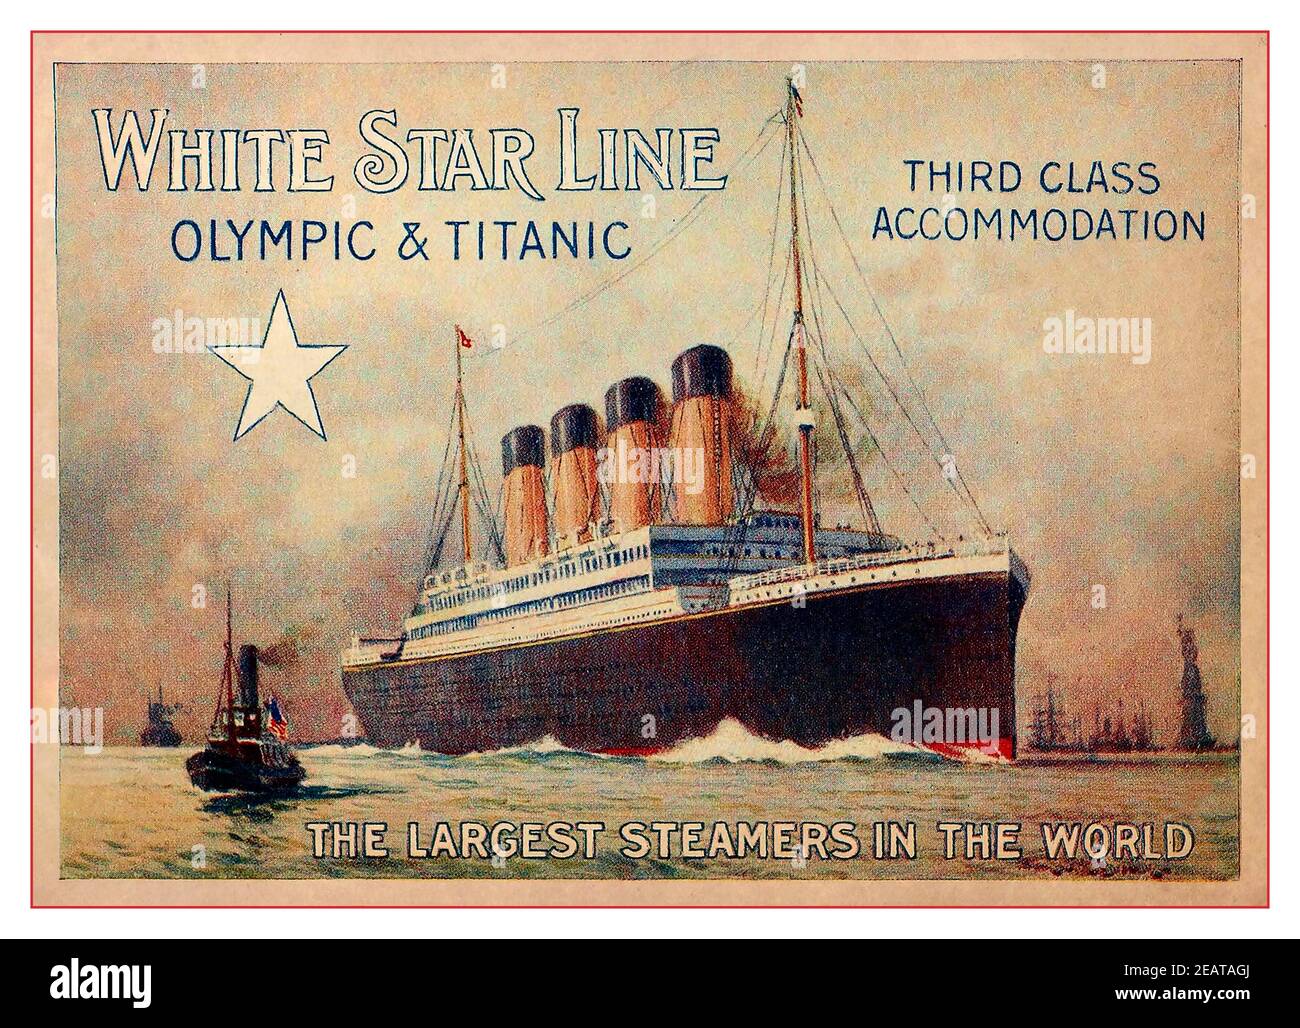 Brochure DEL TITANIC & OLYMPIC 1900 Pubblicità a colori pagina by White Star Line offre sistemazioni di terza classe nei più grandi Steamers Nel mondo 1910 Foto Stock